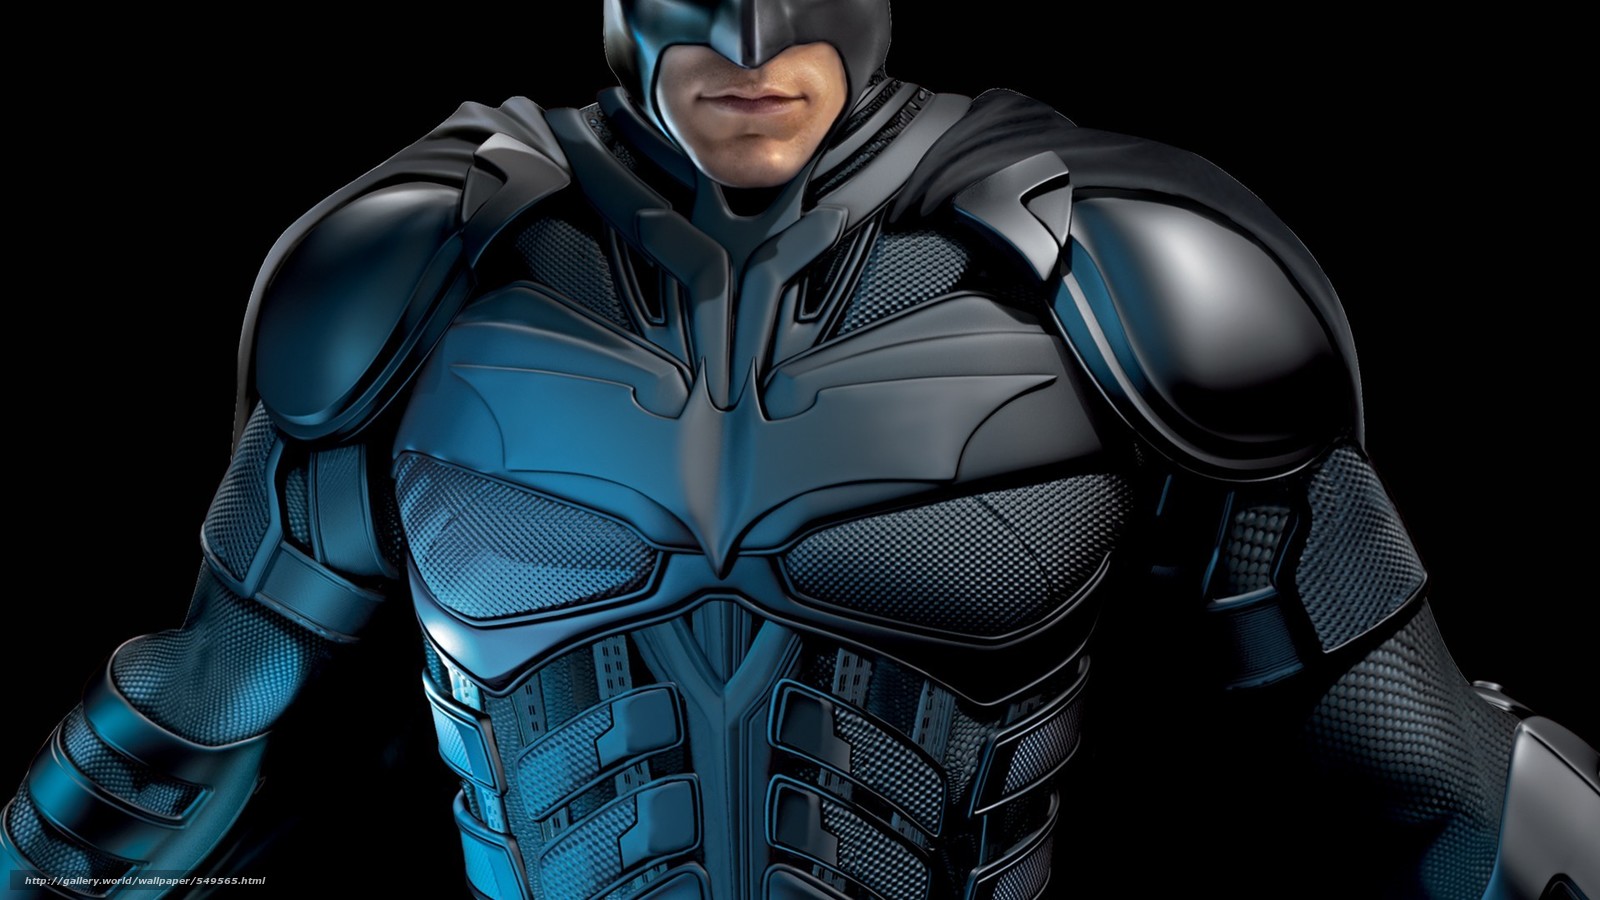 Download Wallpaper Batman, Bruce Wayne, Dark Knight, - Batman Wallpaper Dark Knight Hd - HD Wallpaper 